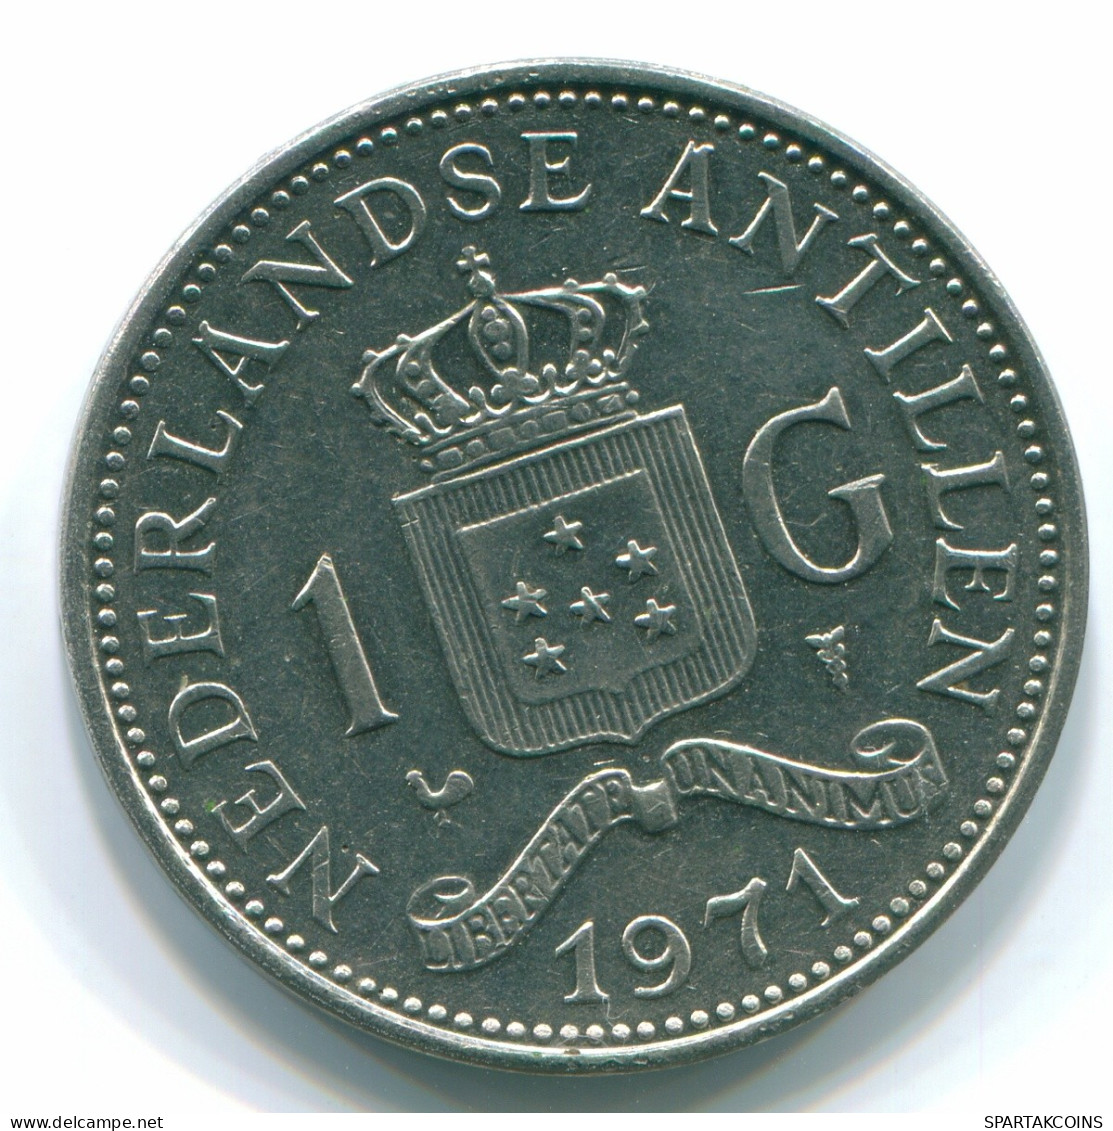 1 GULDEN 1971 NETHERLANDS ANTILLES Nickel Colonial Coin #S11996.U.A - Antillas Neerlandesas